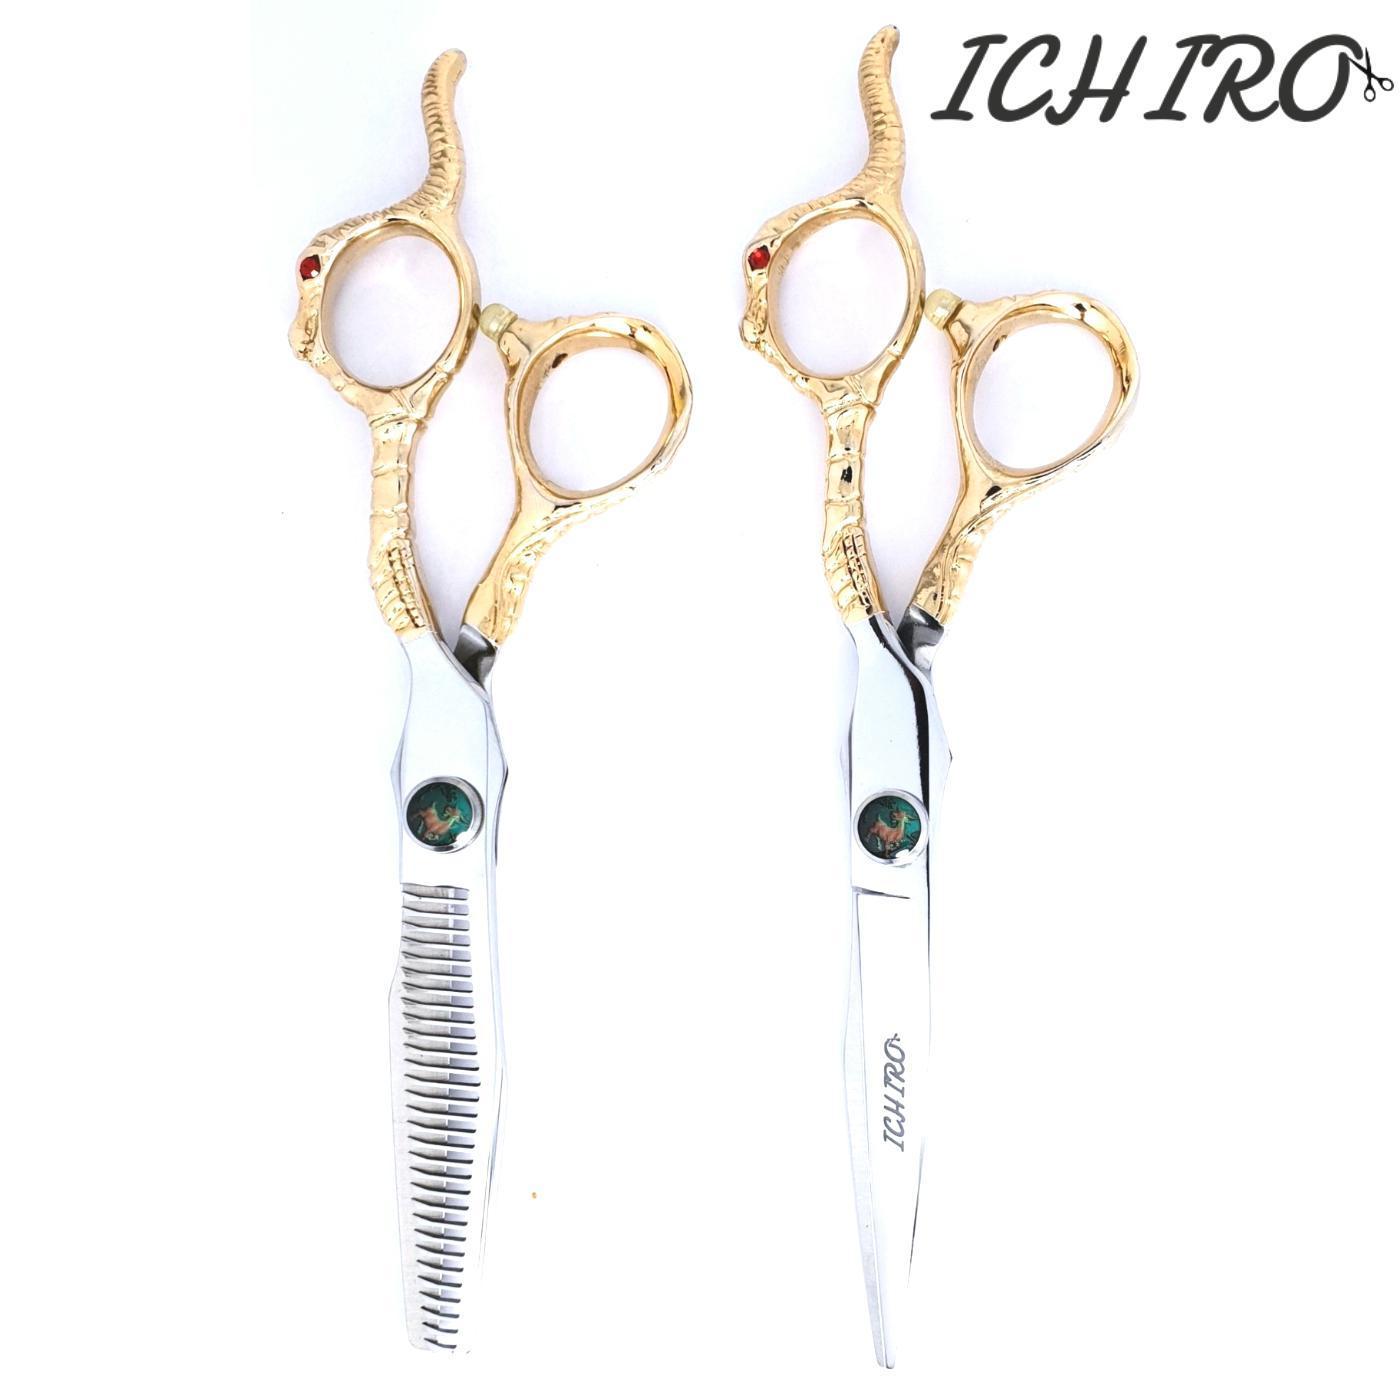 Ichiro Shears - Japan Scissors USA